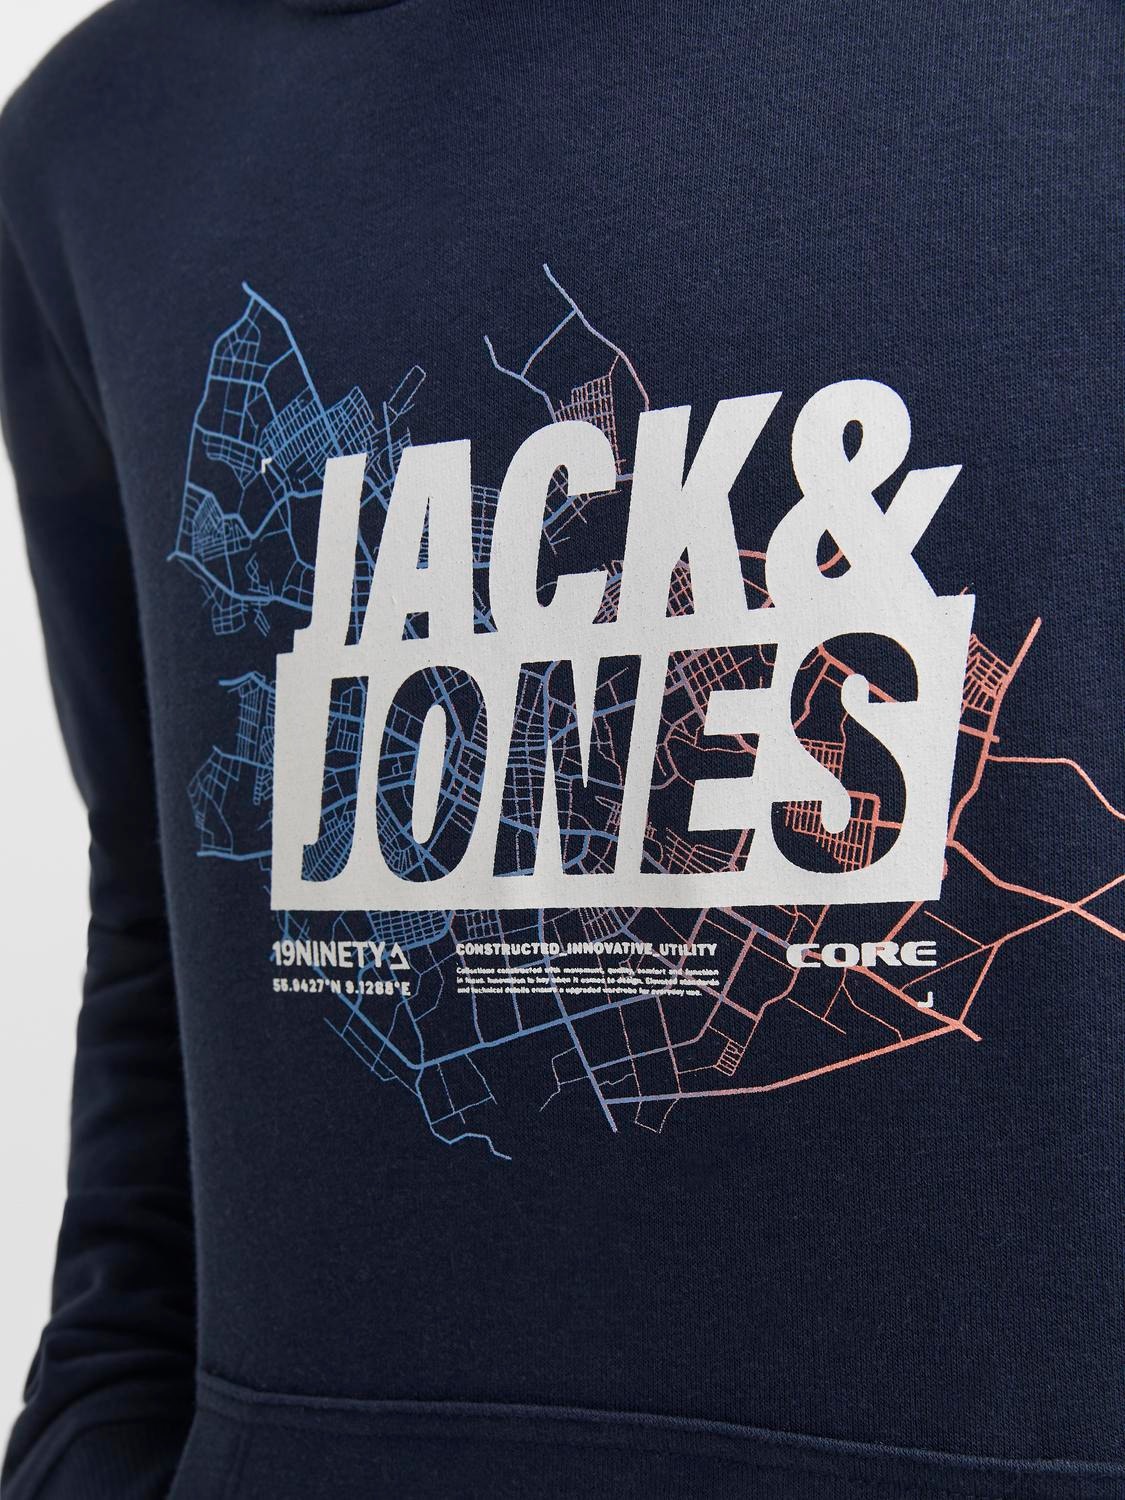 Jack & Jones Printet Hættetrøje Til drenge -Navy Blazer - 12253990